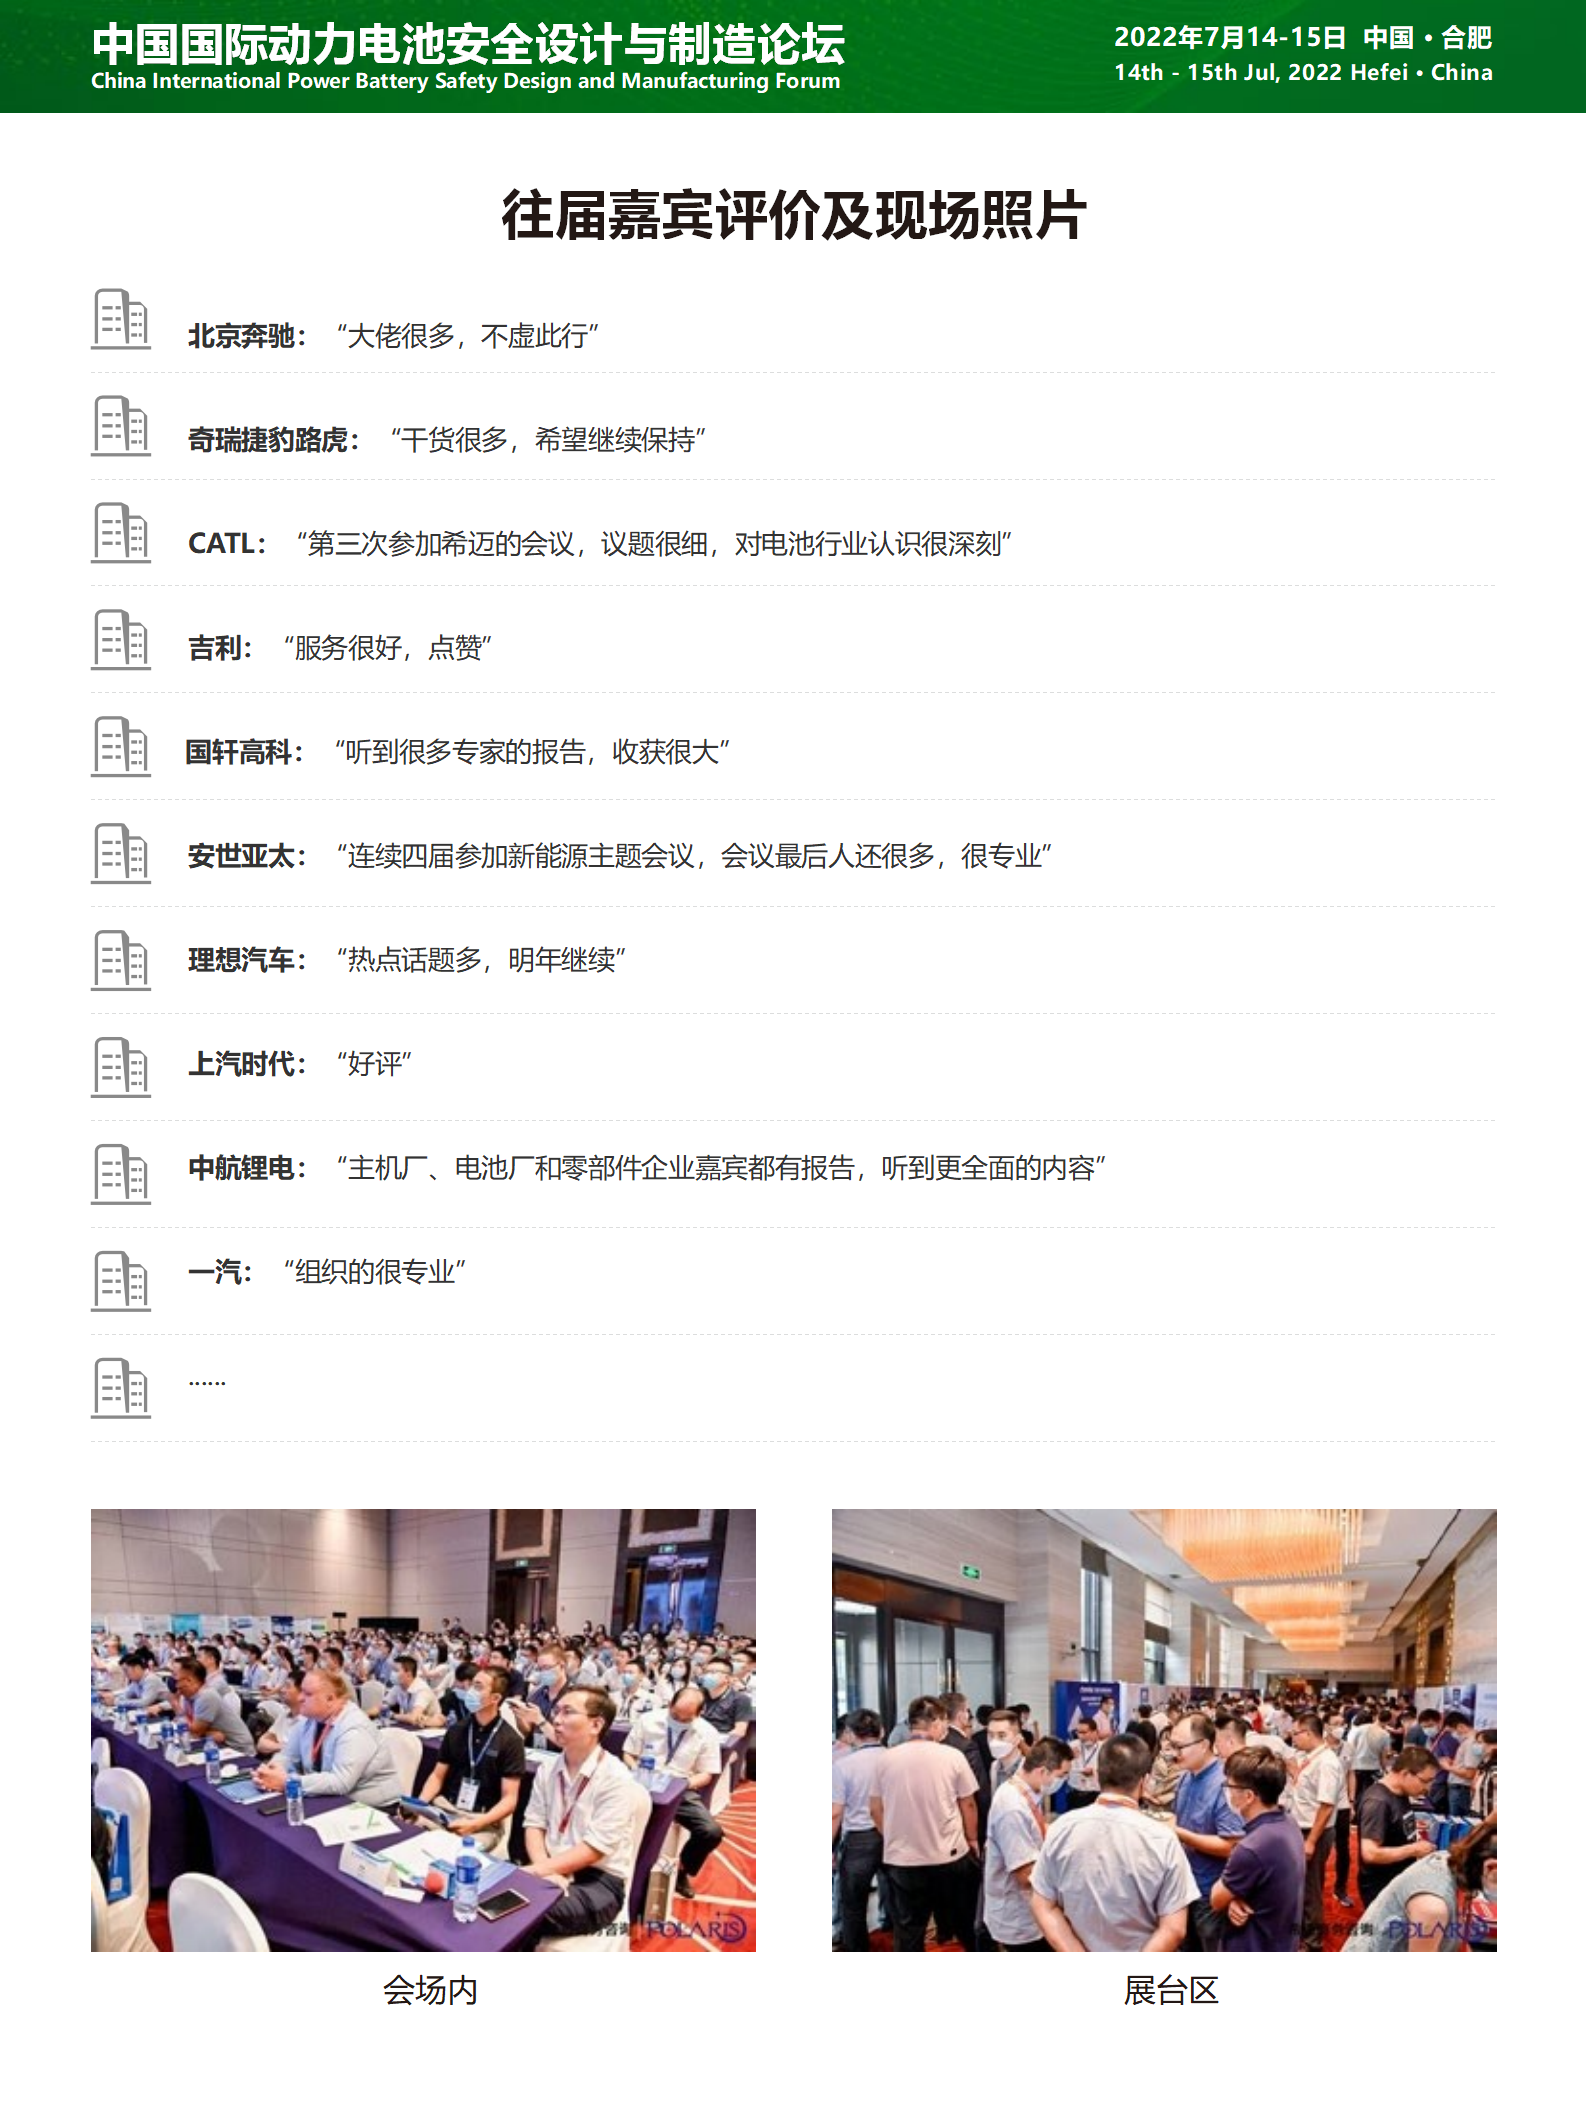 中国国际动力电池安全设计与制造论坛